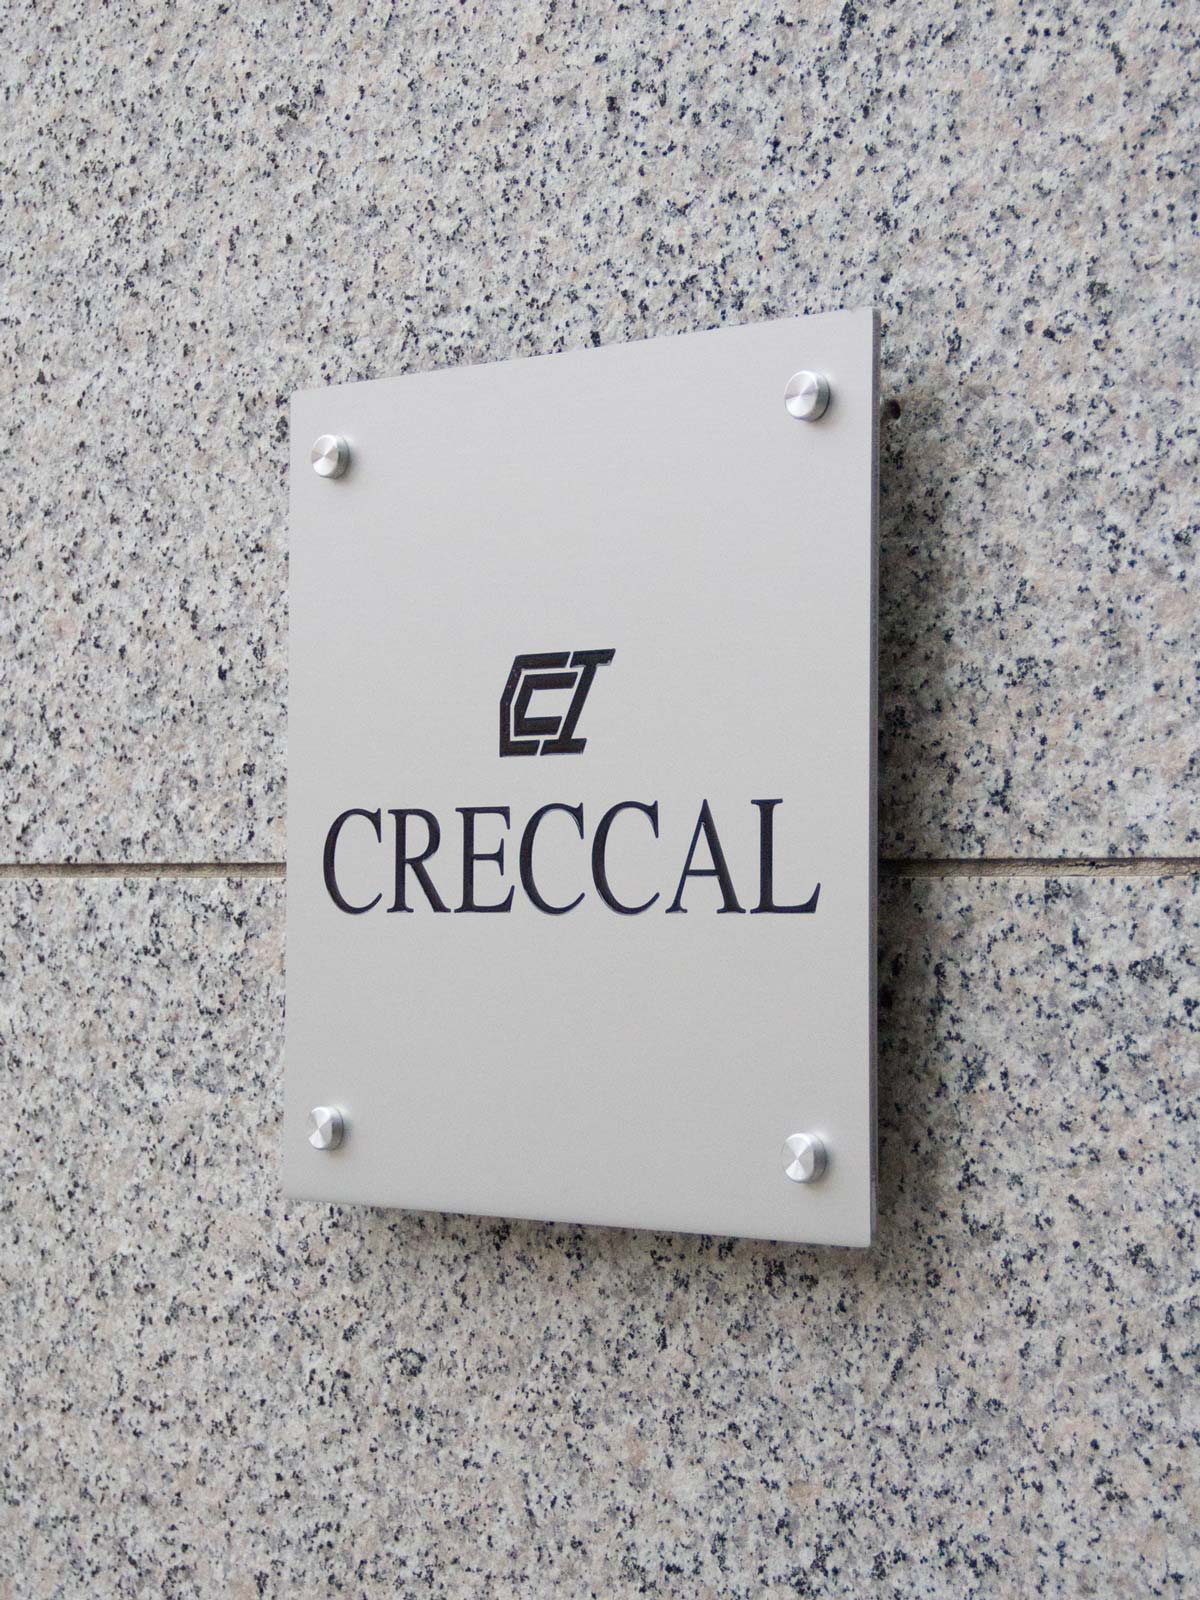 creccal_investments_LTD